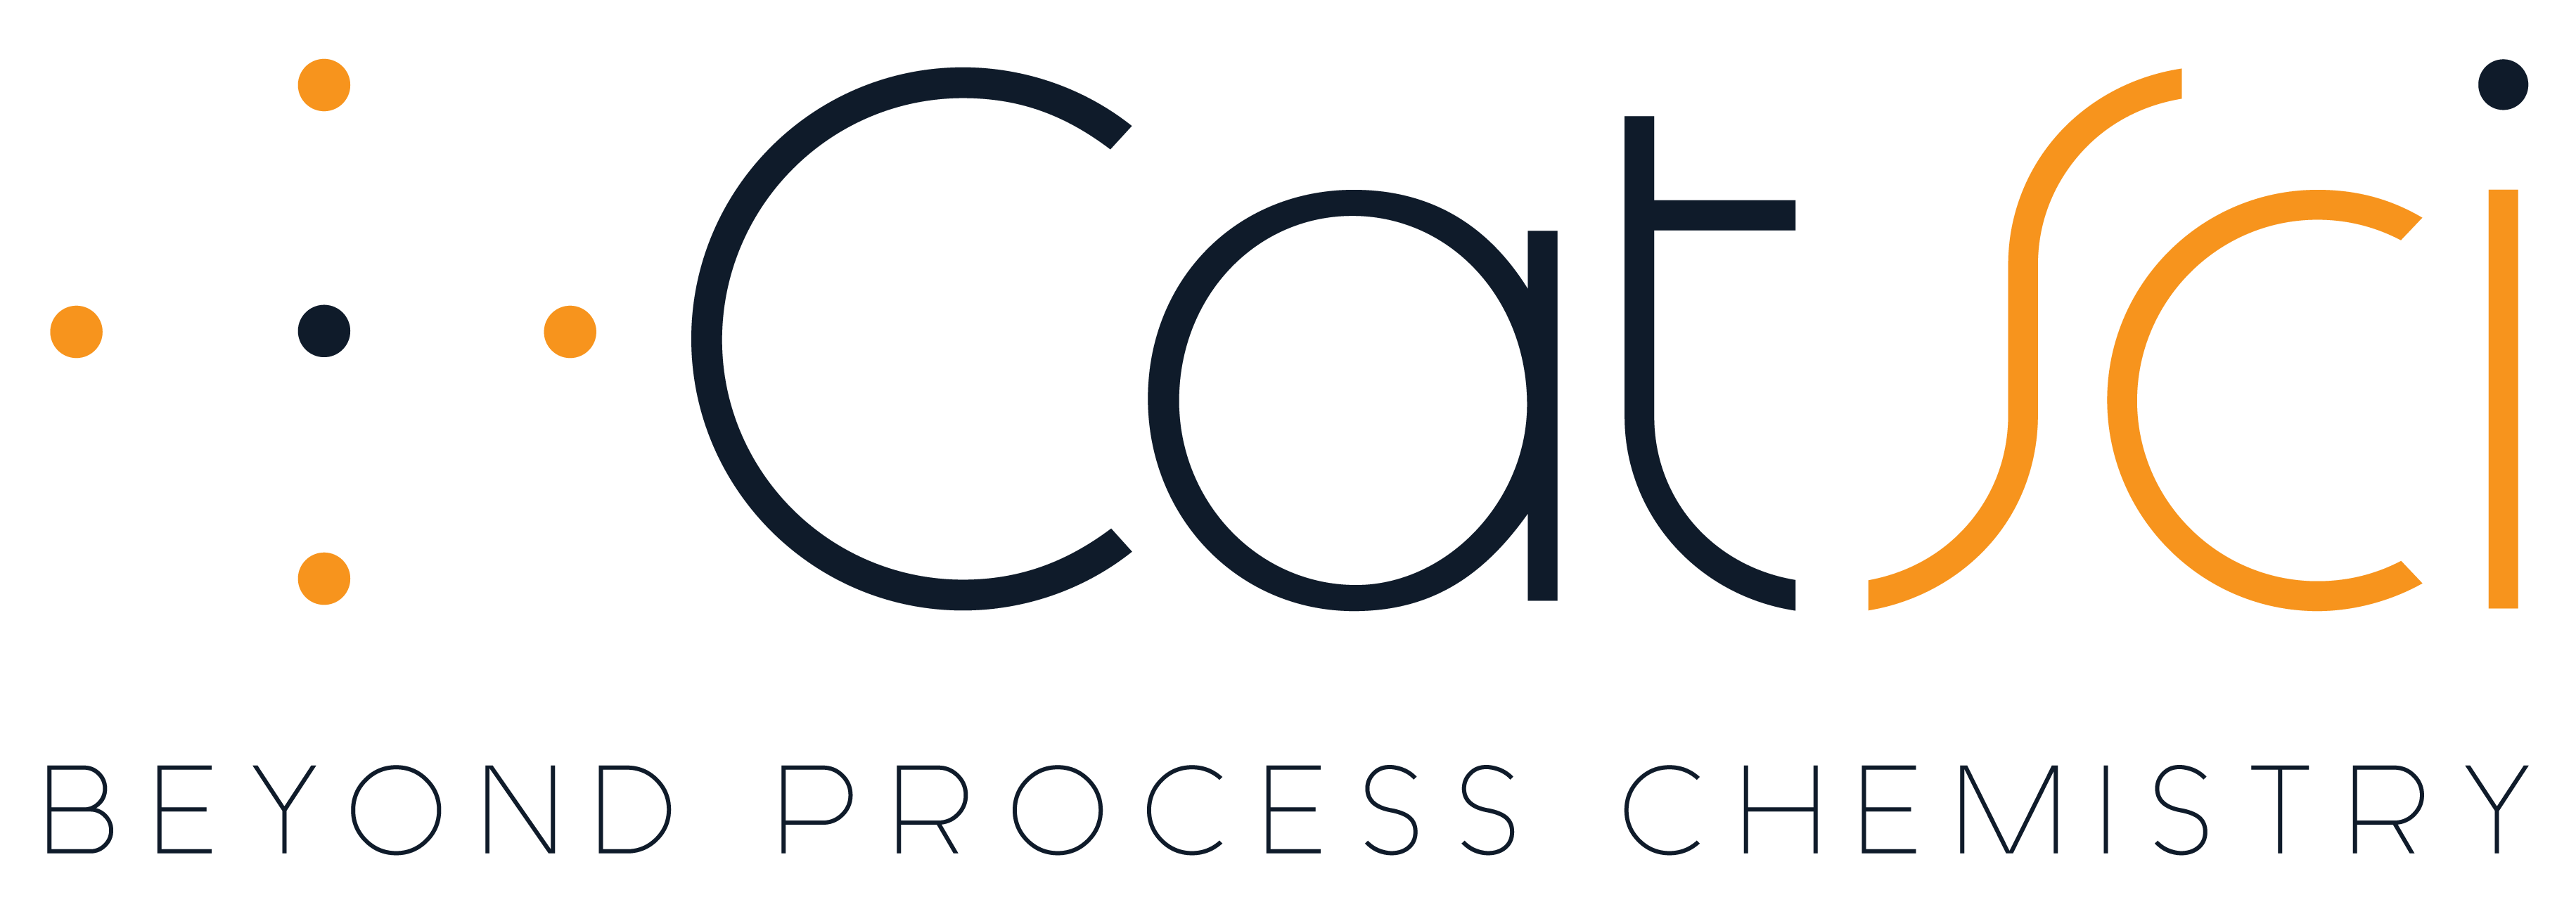 CatSci Logo